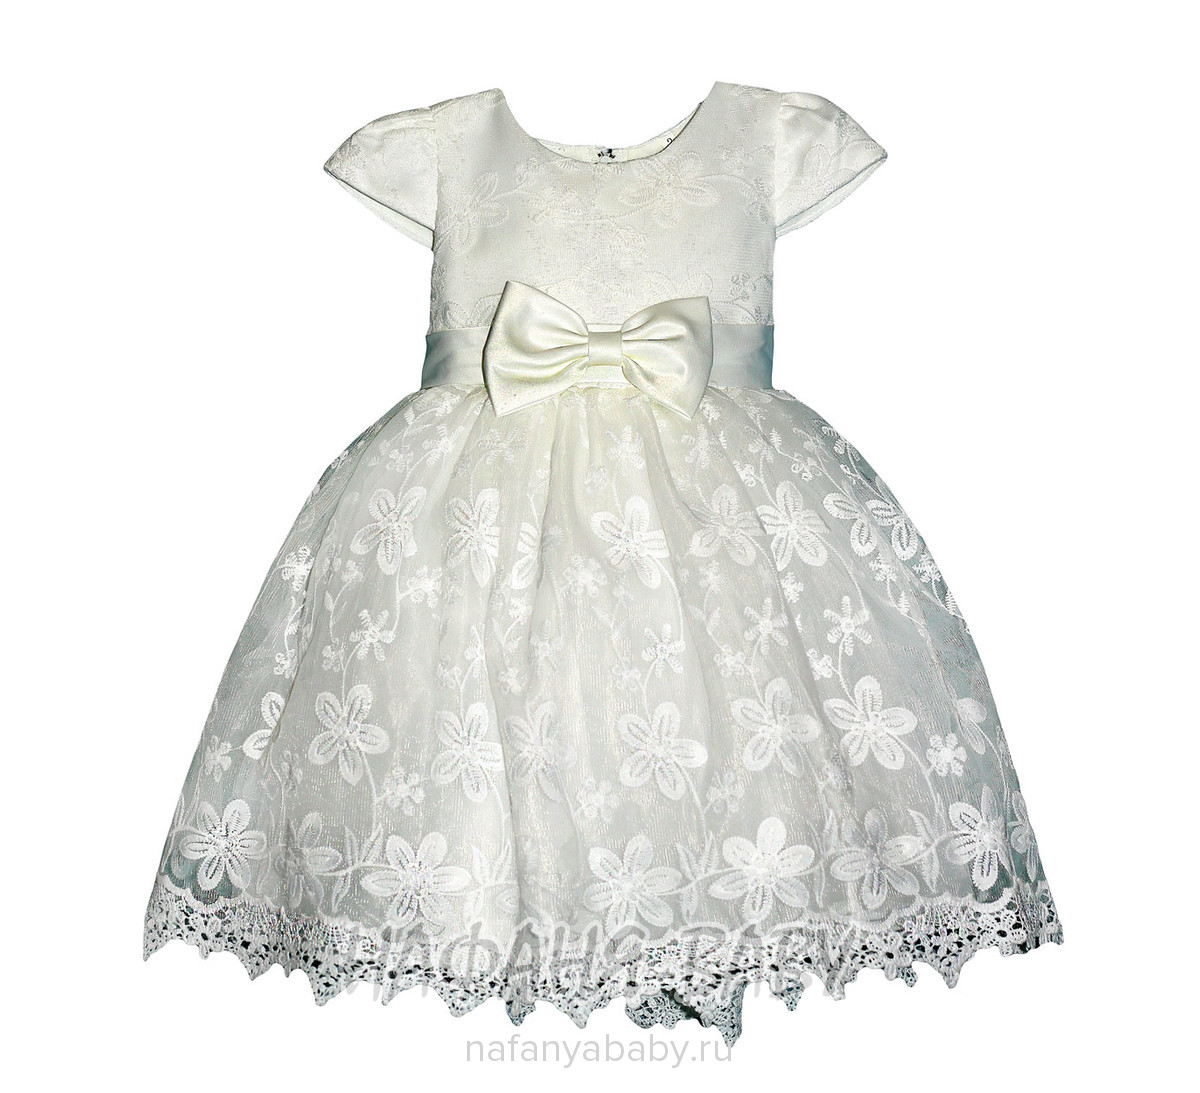 Детское платье YOU YITAO, купить в интернет магазине Нафаня. арт: 16999.